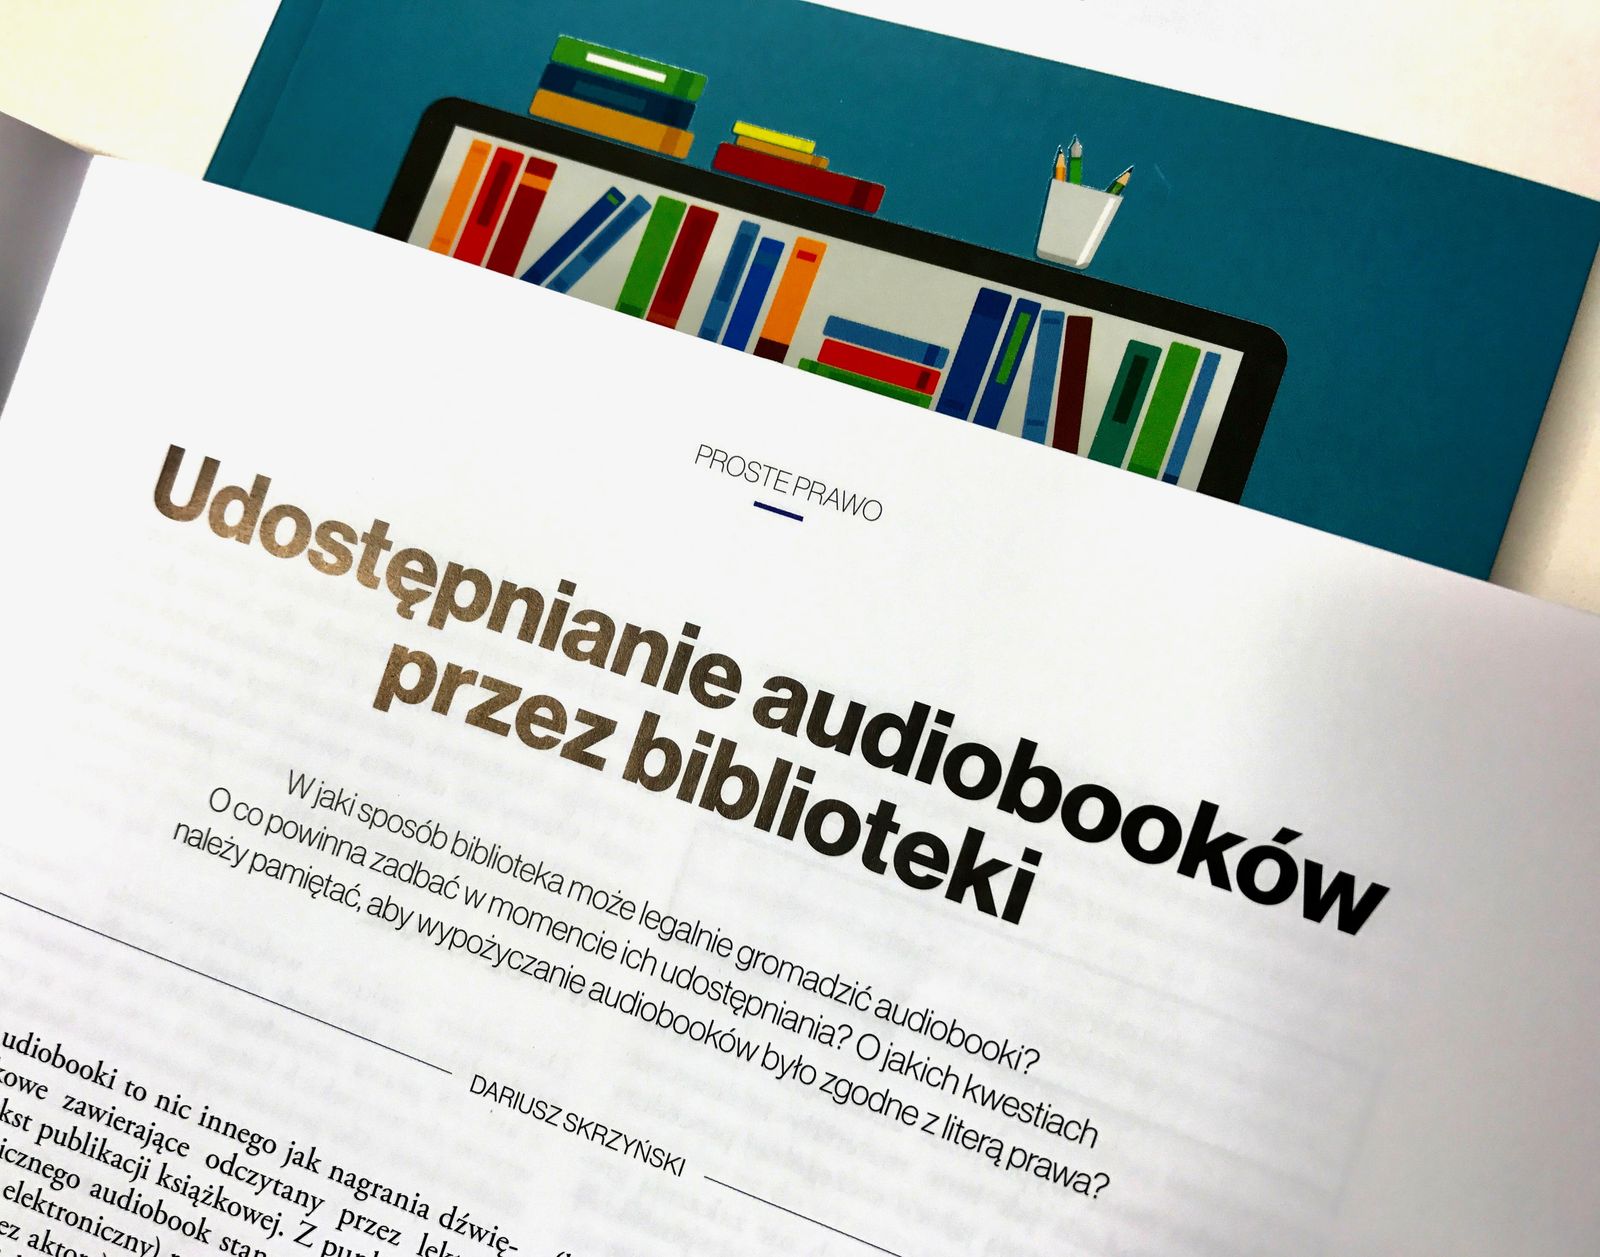 Udostępnianie audiobooków i e-booków w bibliotekach